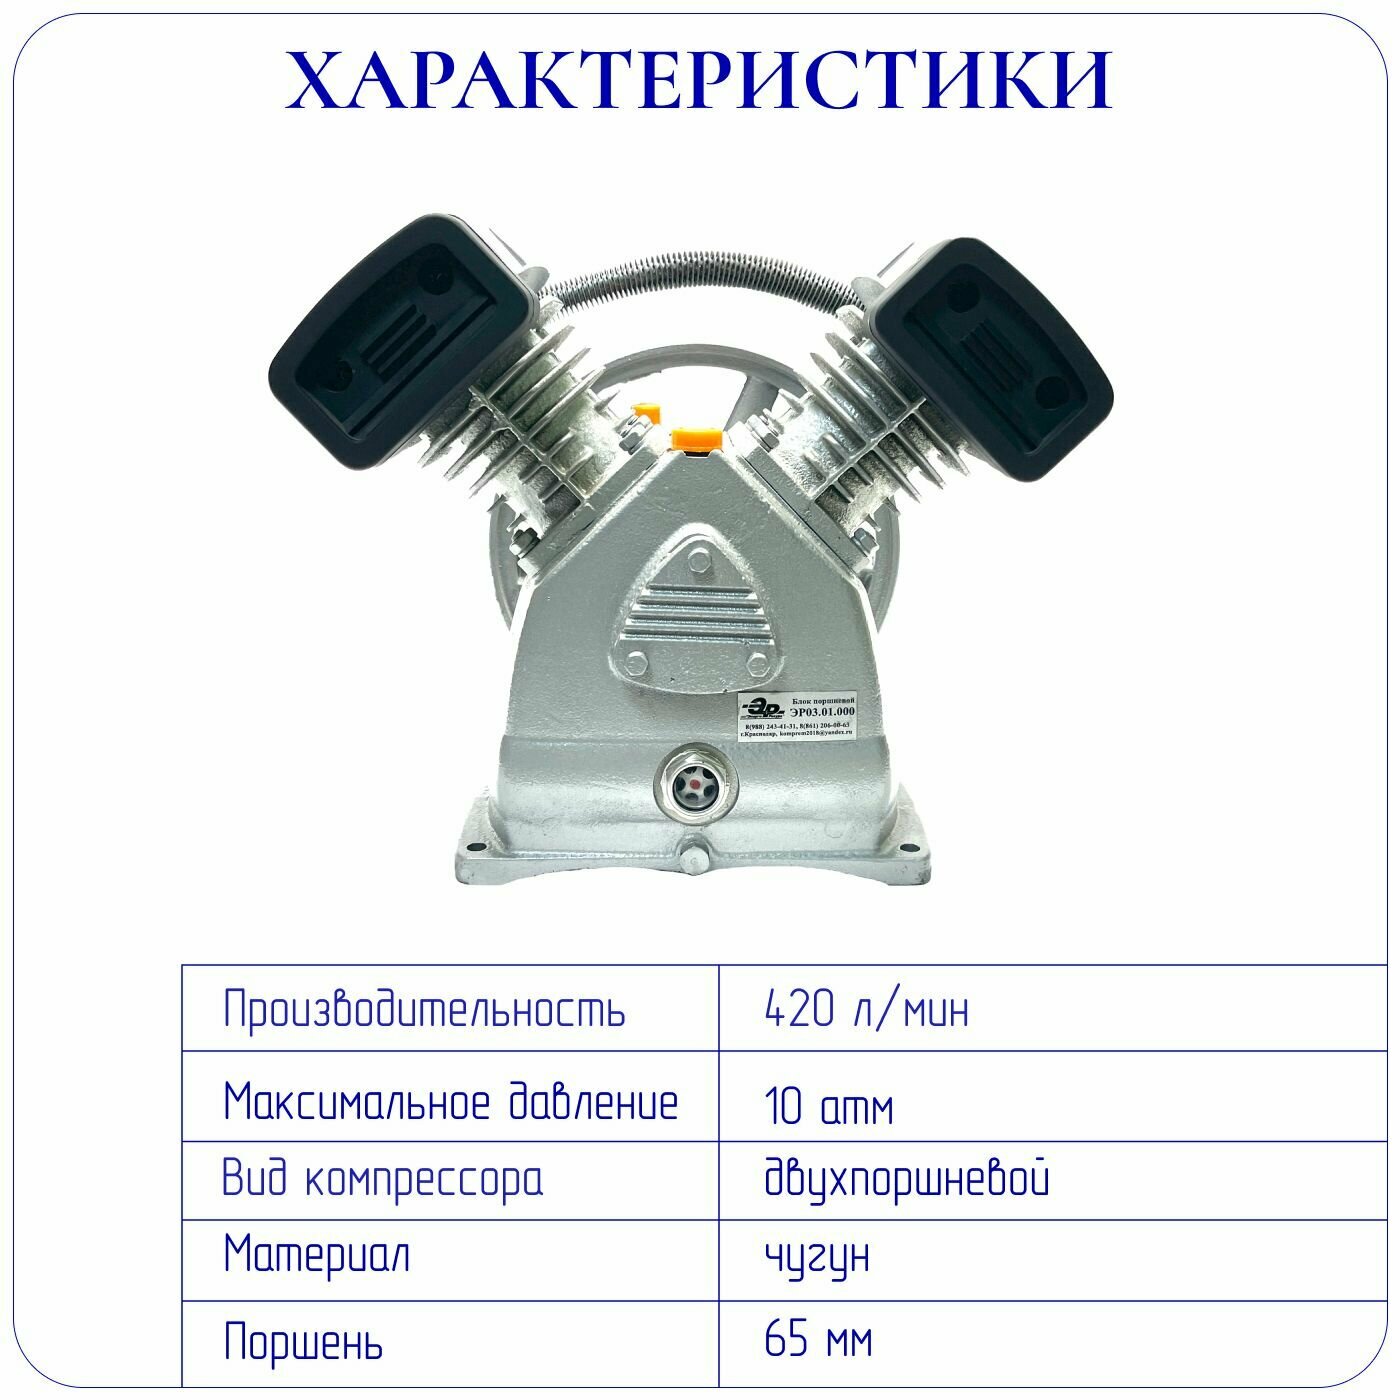 Головка компрессора LB30(v-2065) 220 В 10 атм 420 л/мин